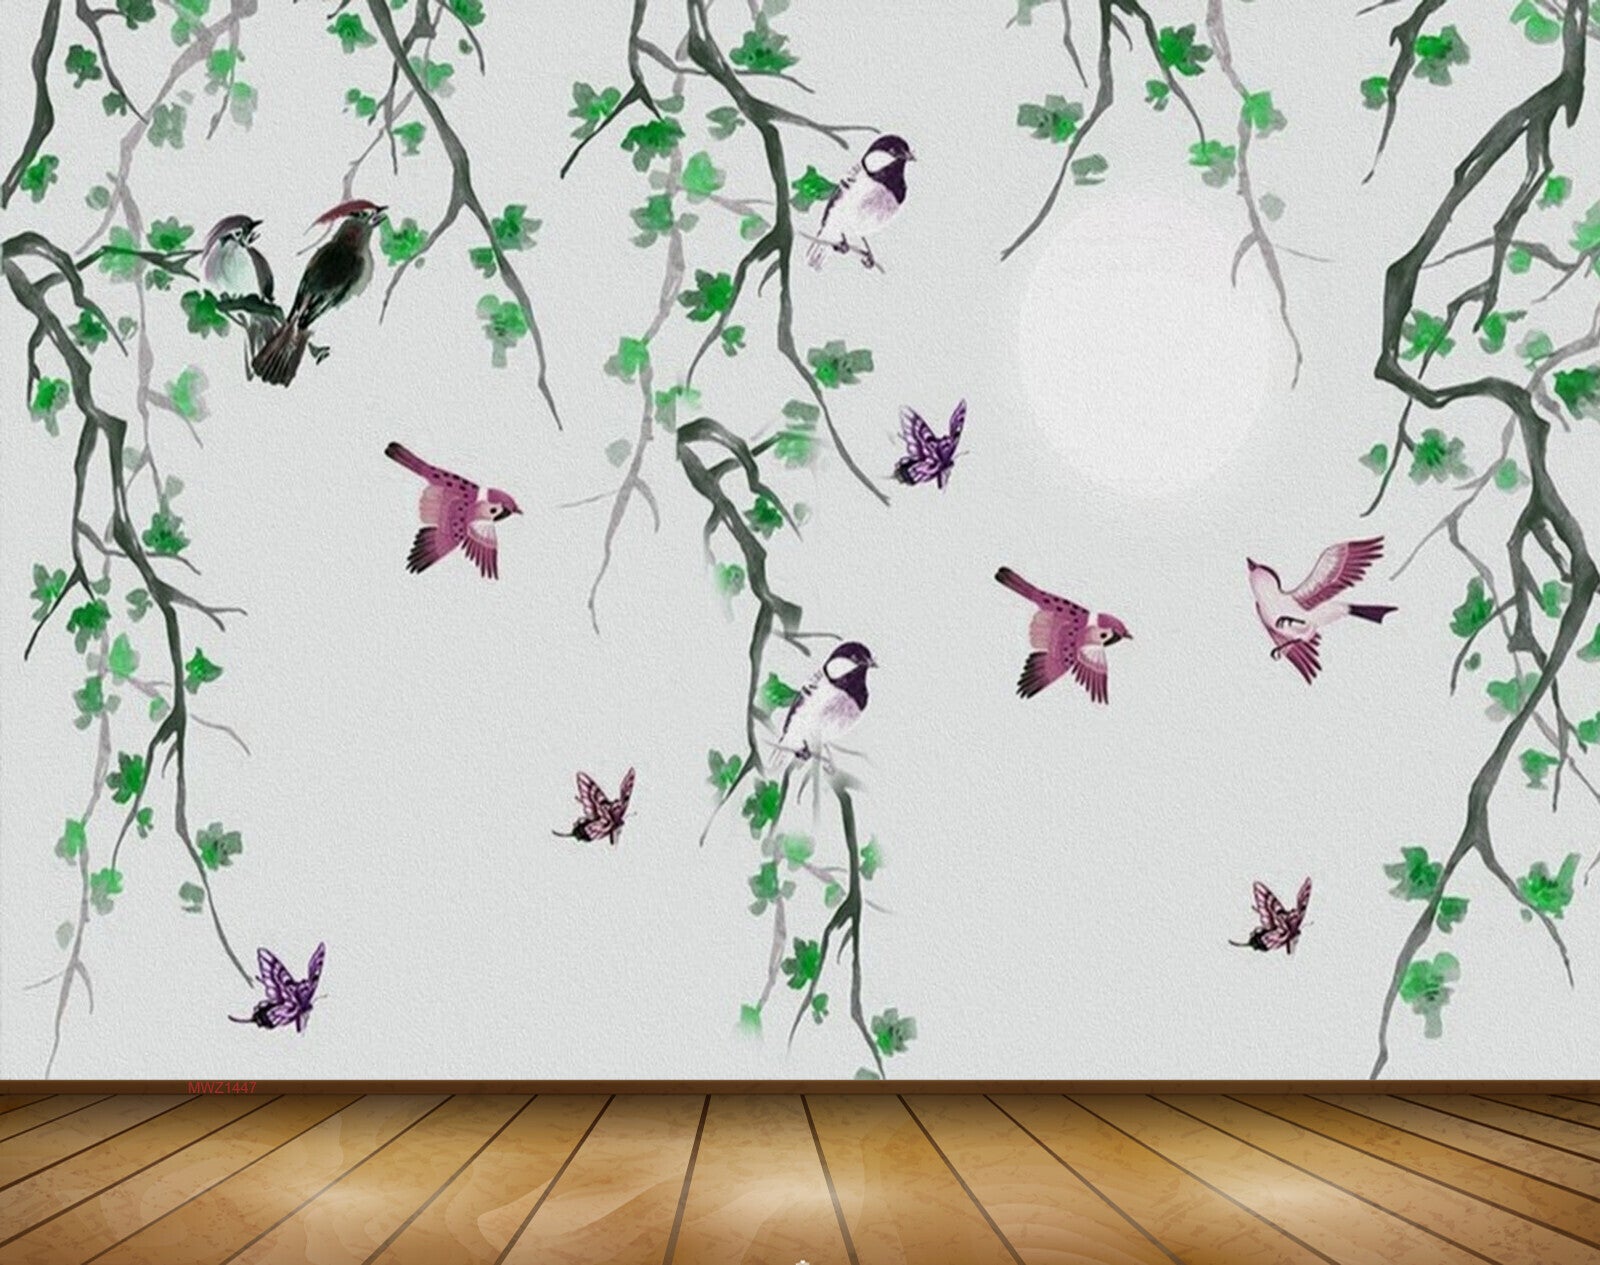 Avikalp MWZ1447 Birds Trees Branches Butterflies 3D HD Wallpaper